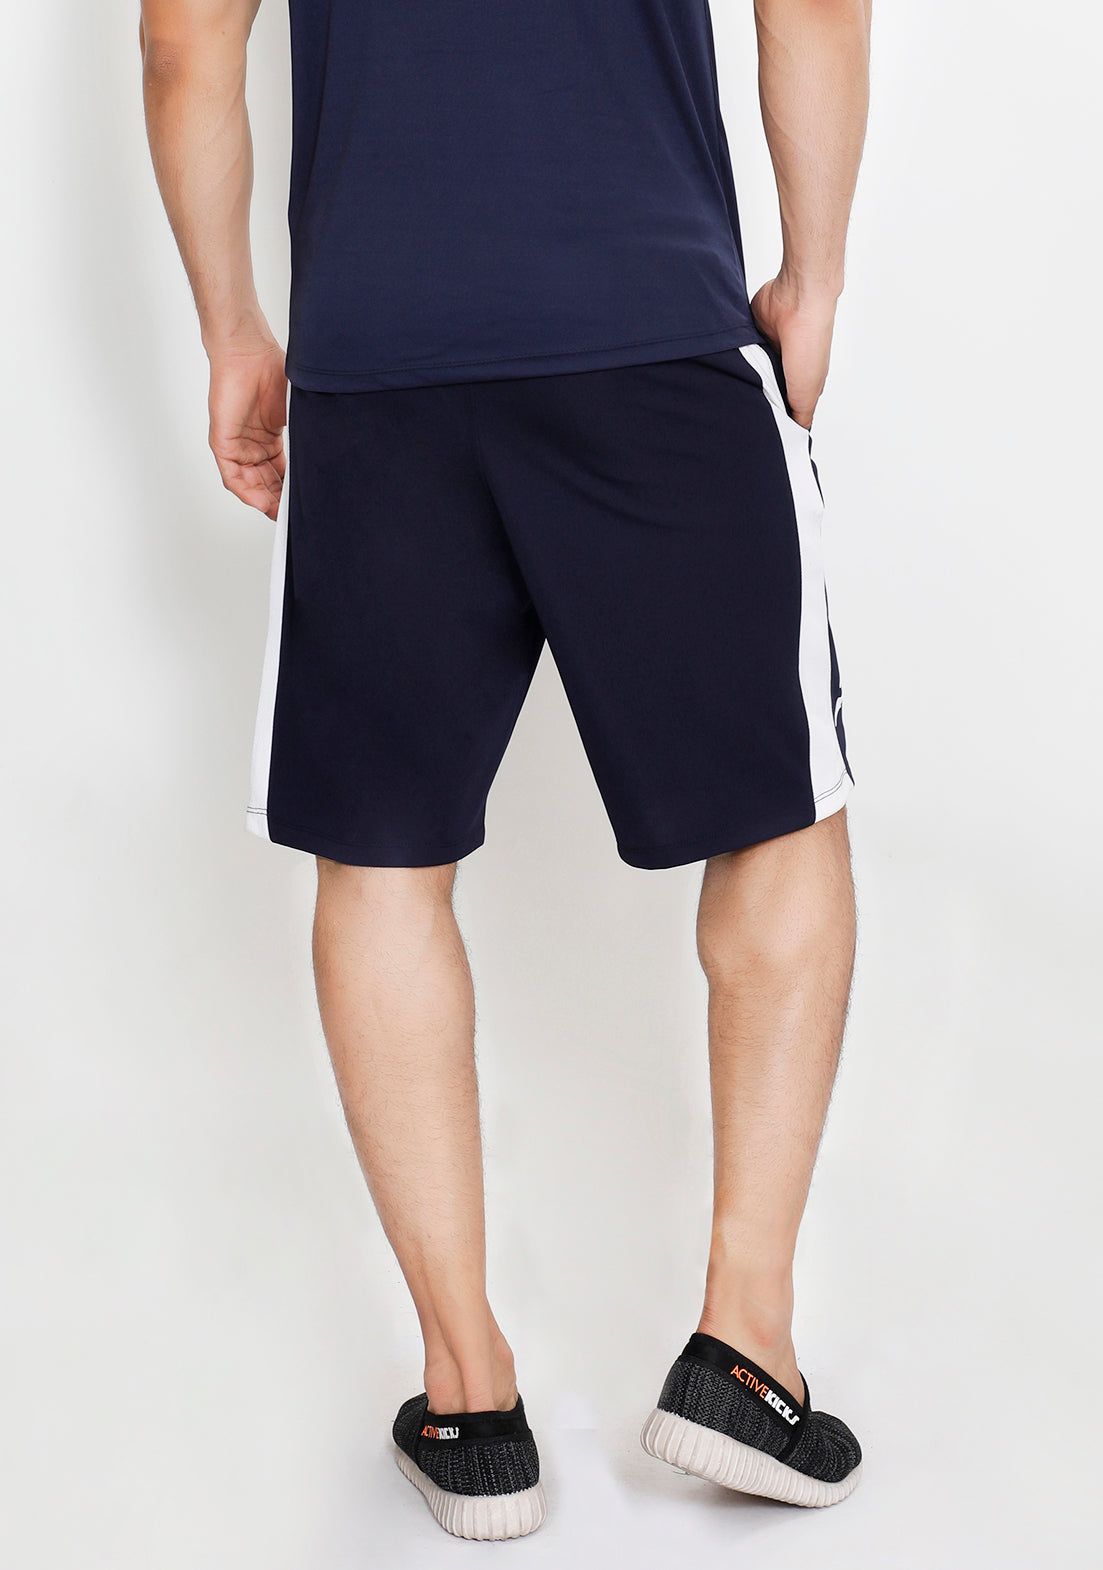 Navy Basketball Shorts - Yogue Activewear